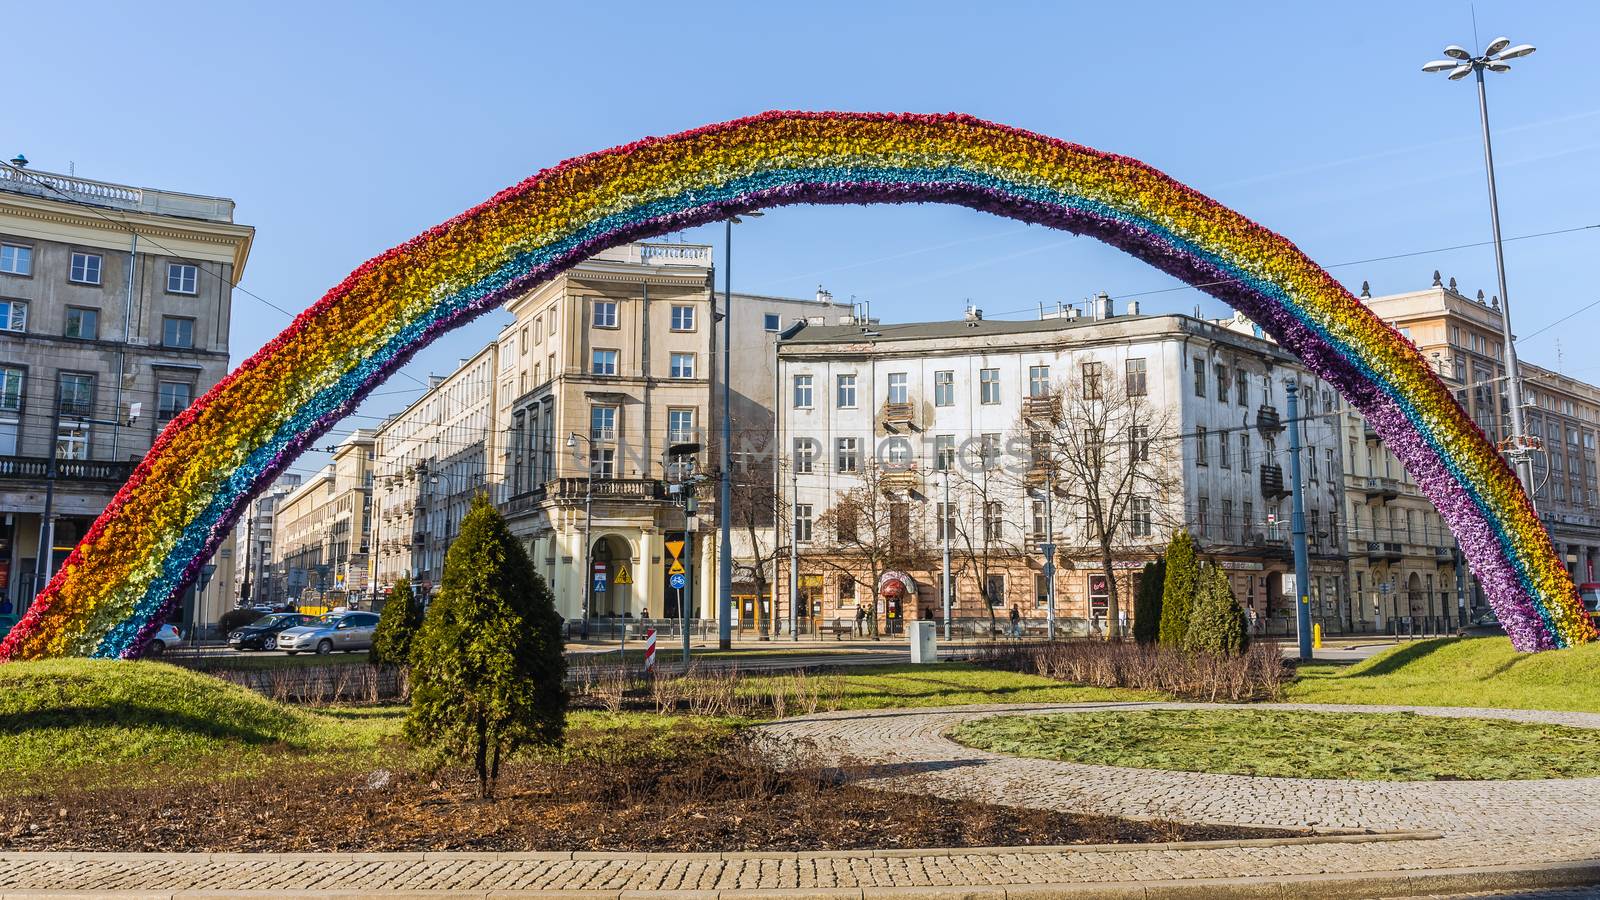 The Rainbow, art installation by pawel_szczepanski